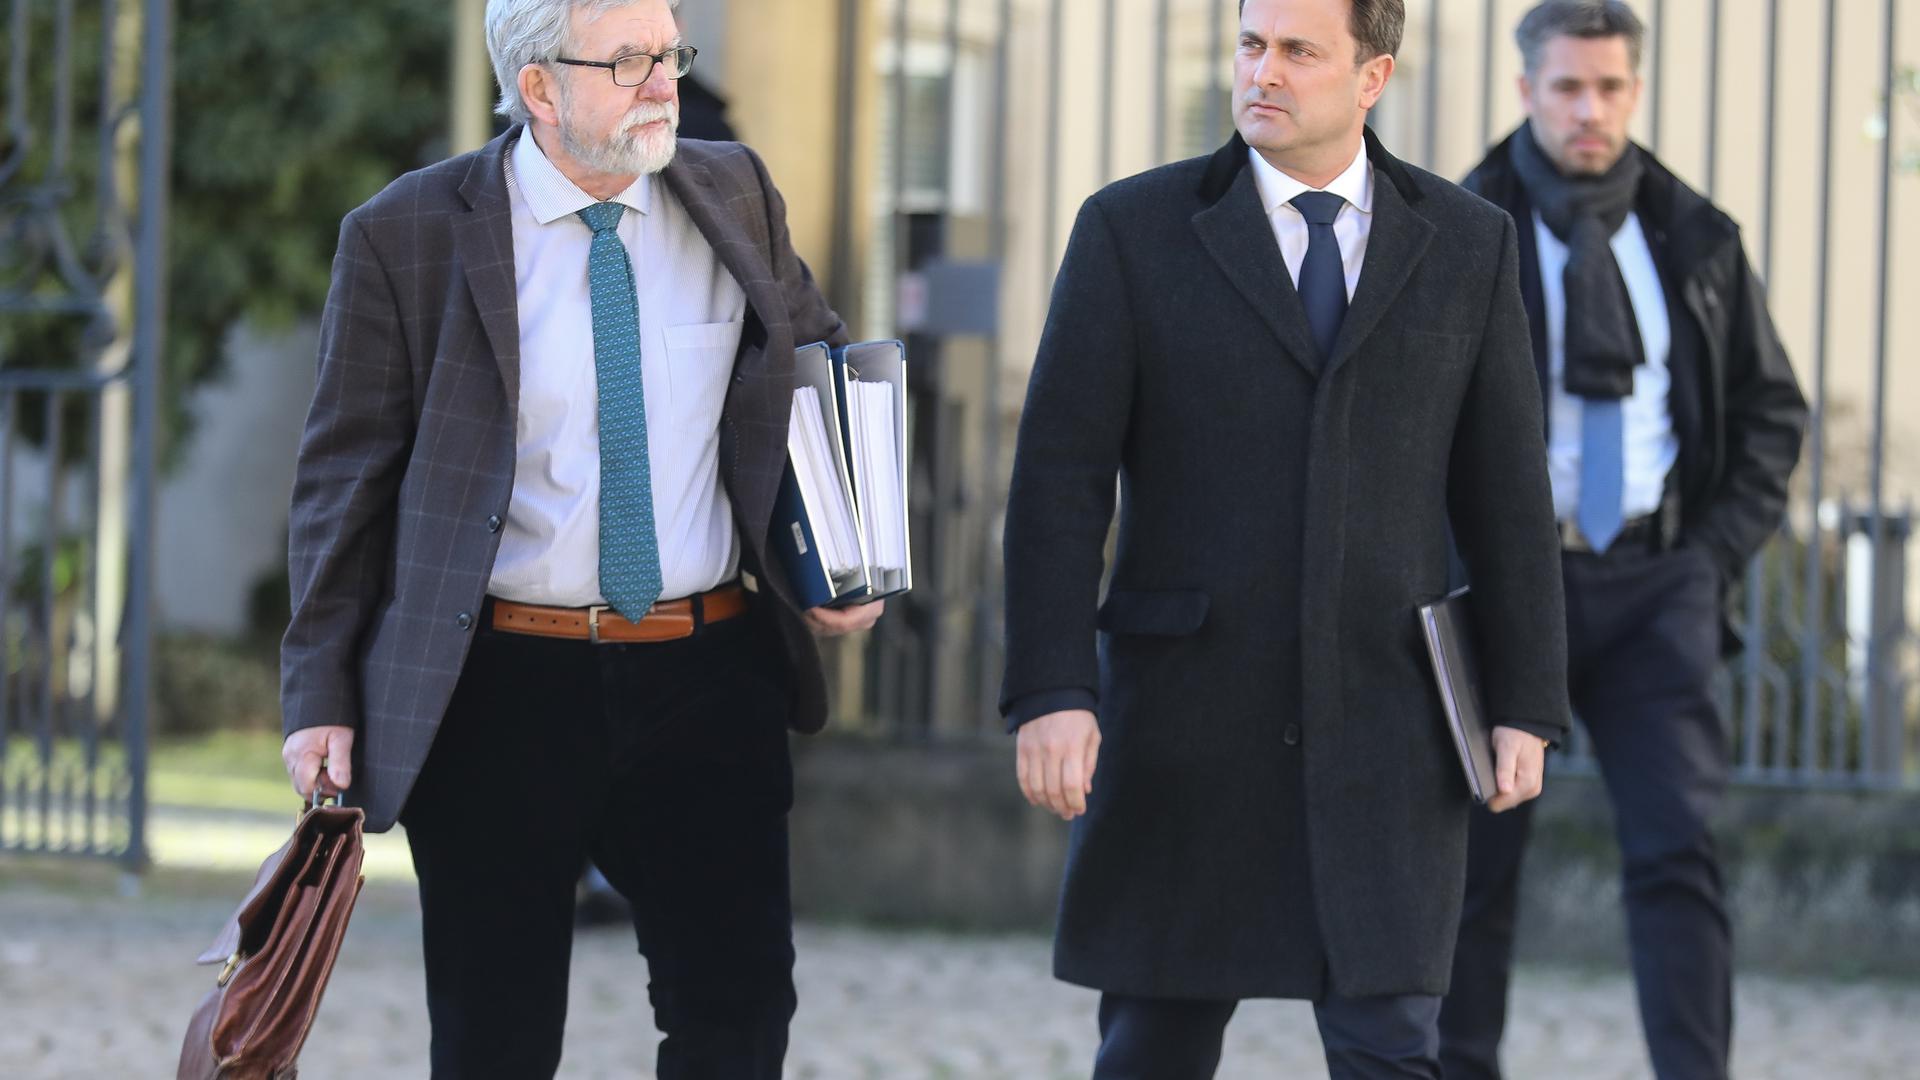 Le 5 février, Jeannot Waringo et le Premier ministre étaient venus présenter le rapport sur le fonctionnement de la cour aux députés.